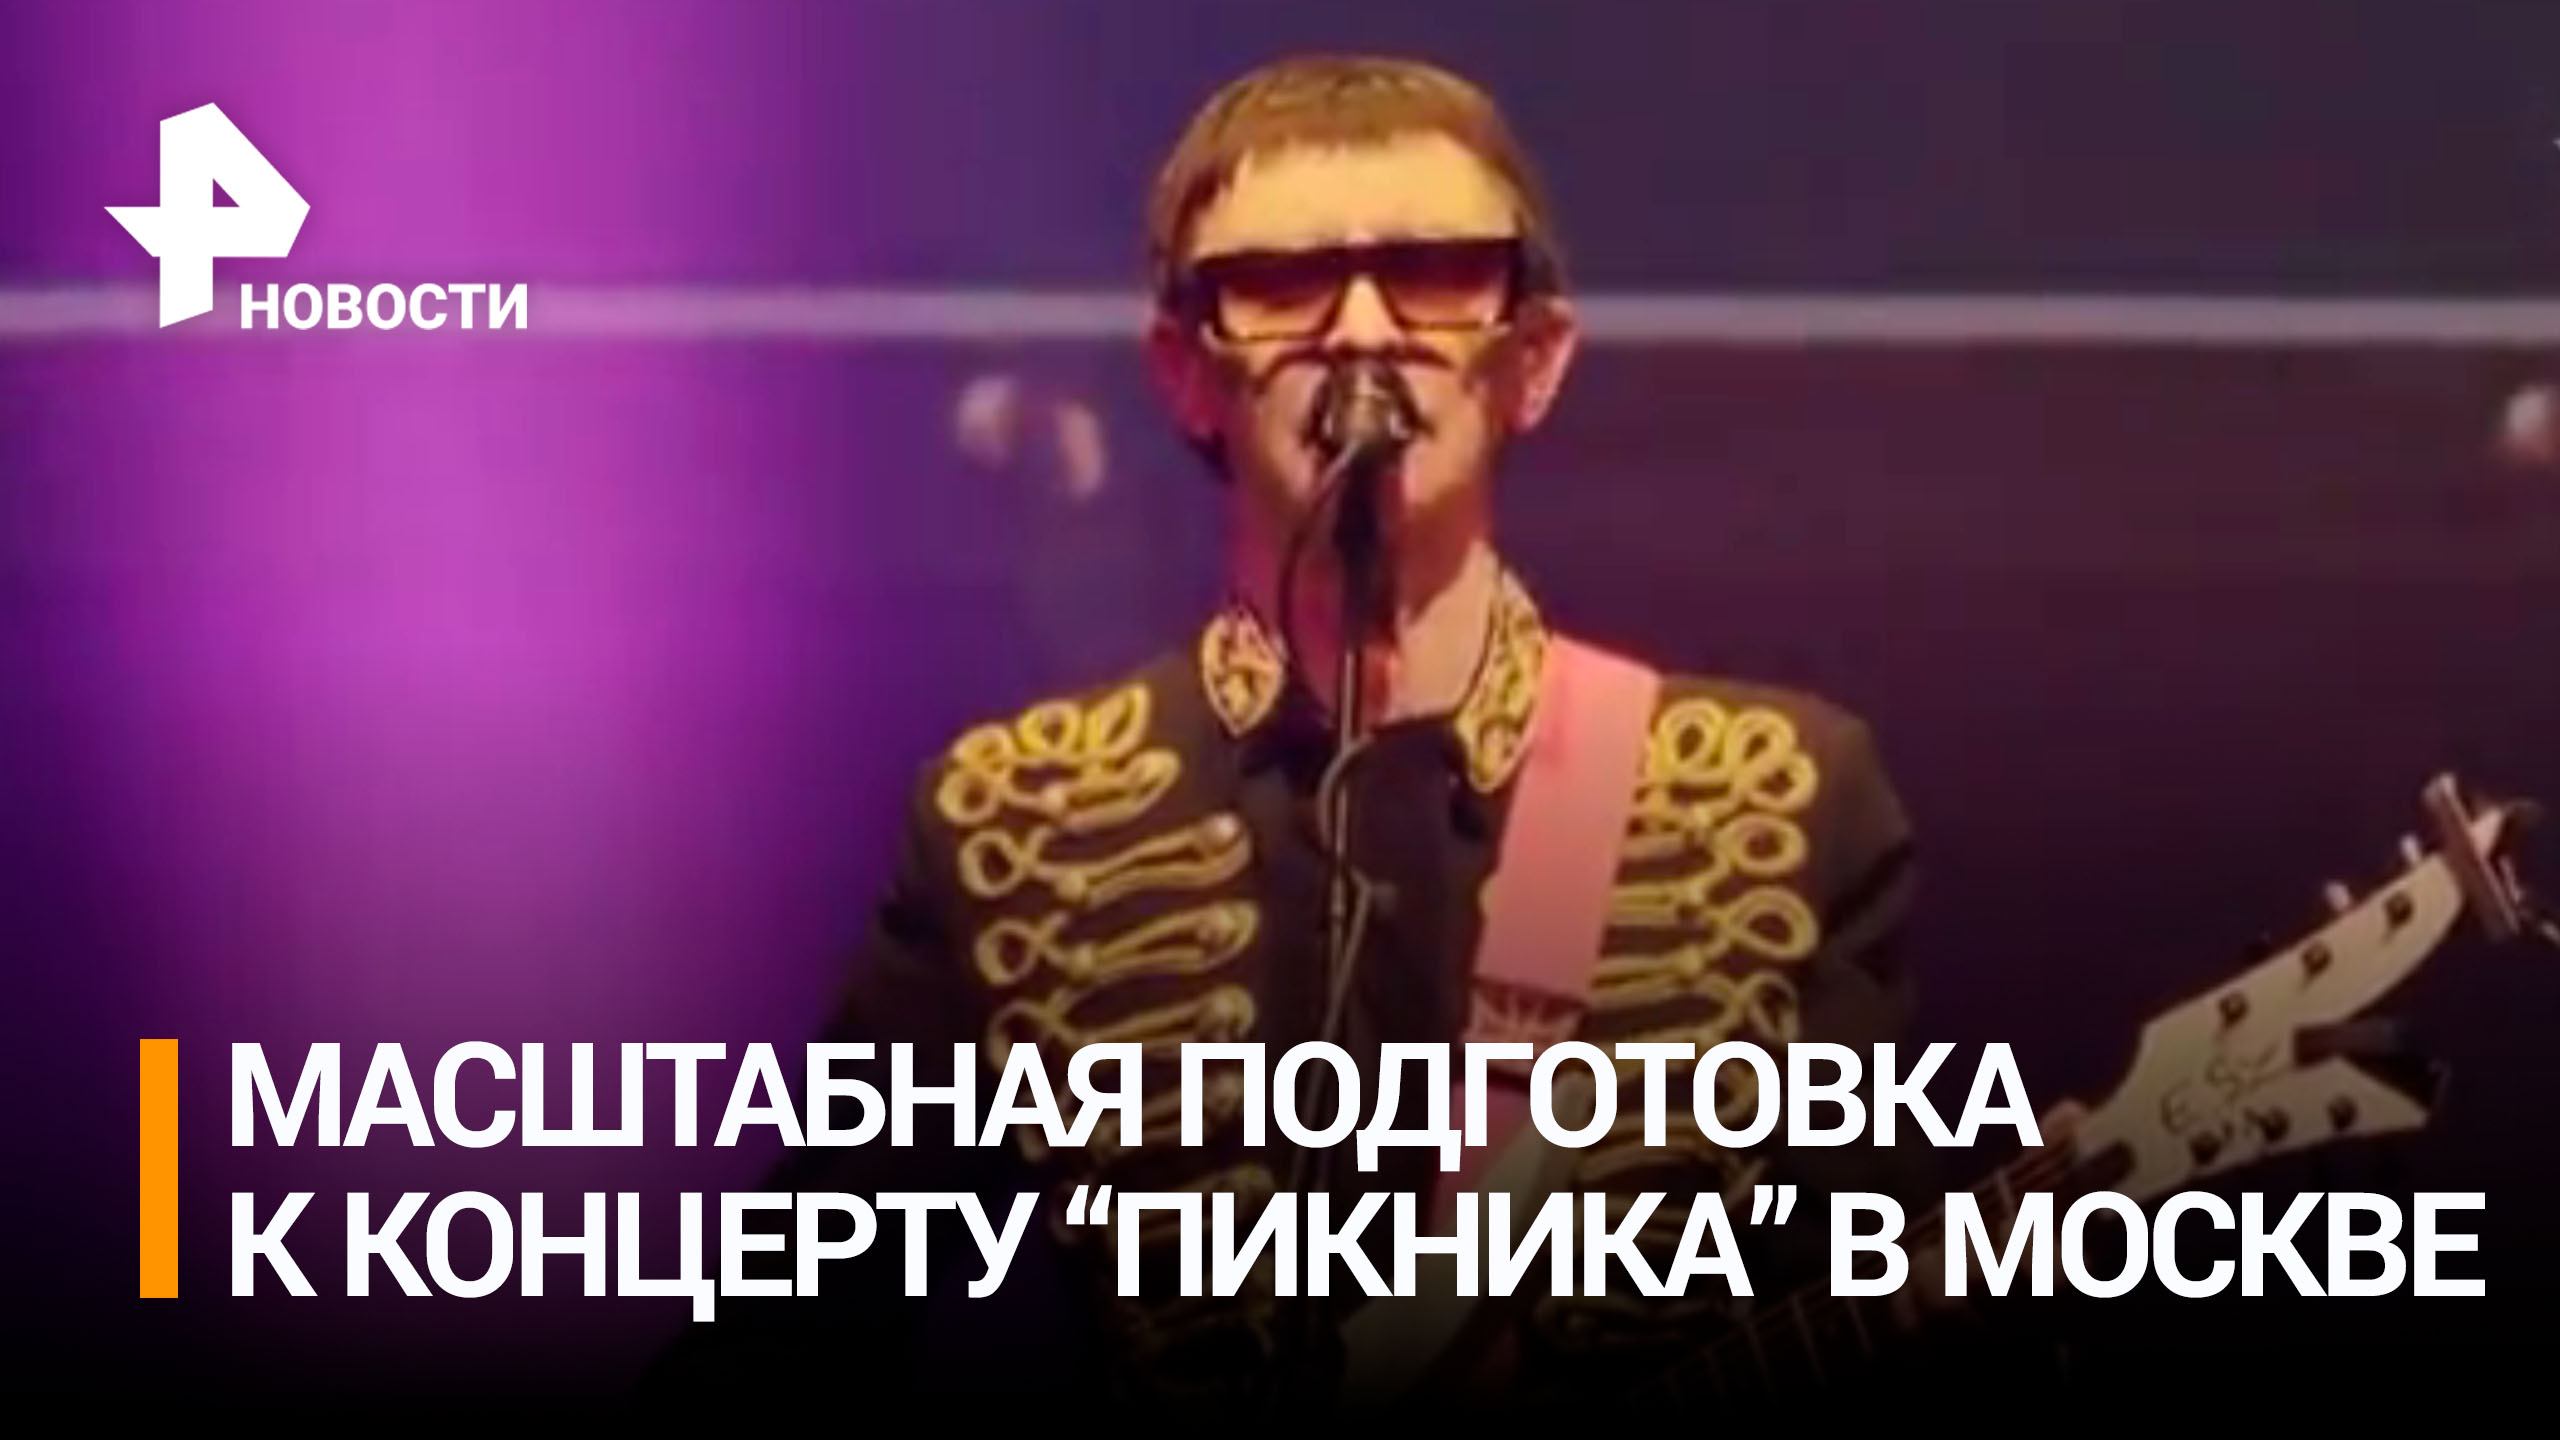 Группа "Пикник" проводит последние приготовления к масштабному концерту в Москве / РЕН Новости